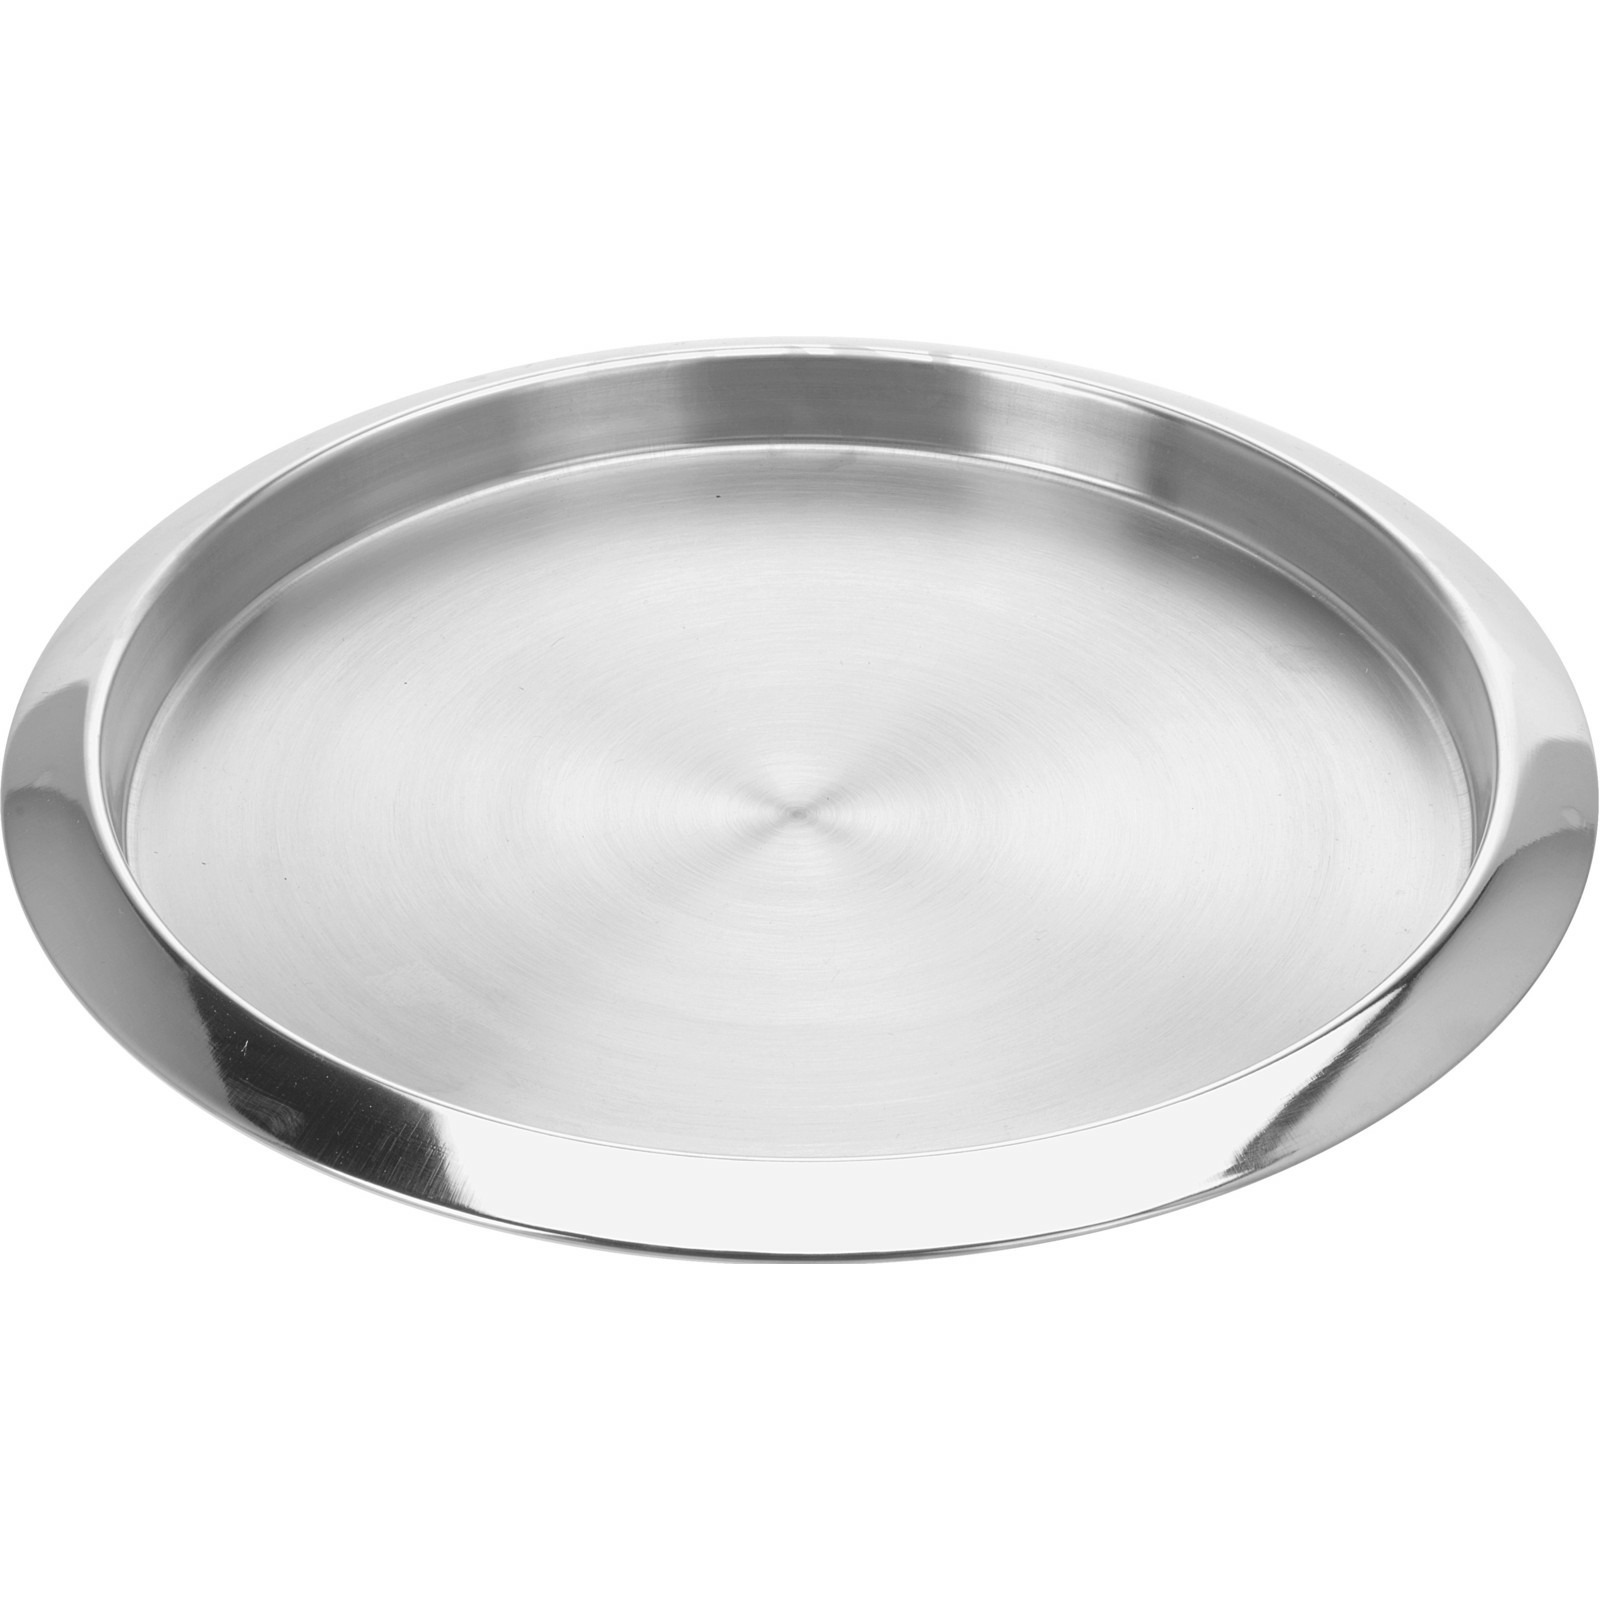 Excellent Houseware Dienblad / serveer of kaarsplateau - Dia 35 cm - metaal - zilver kleurig -